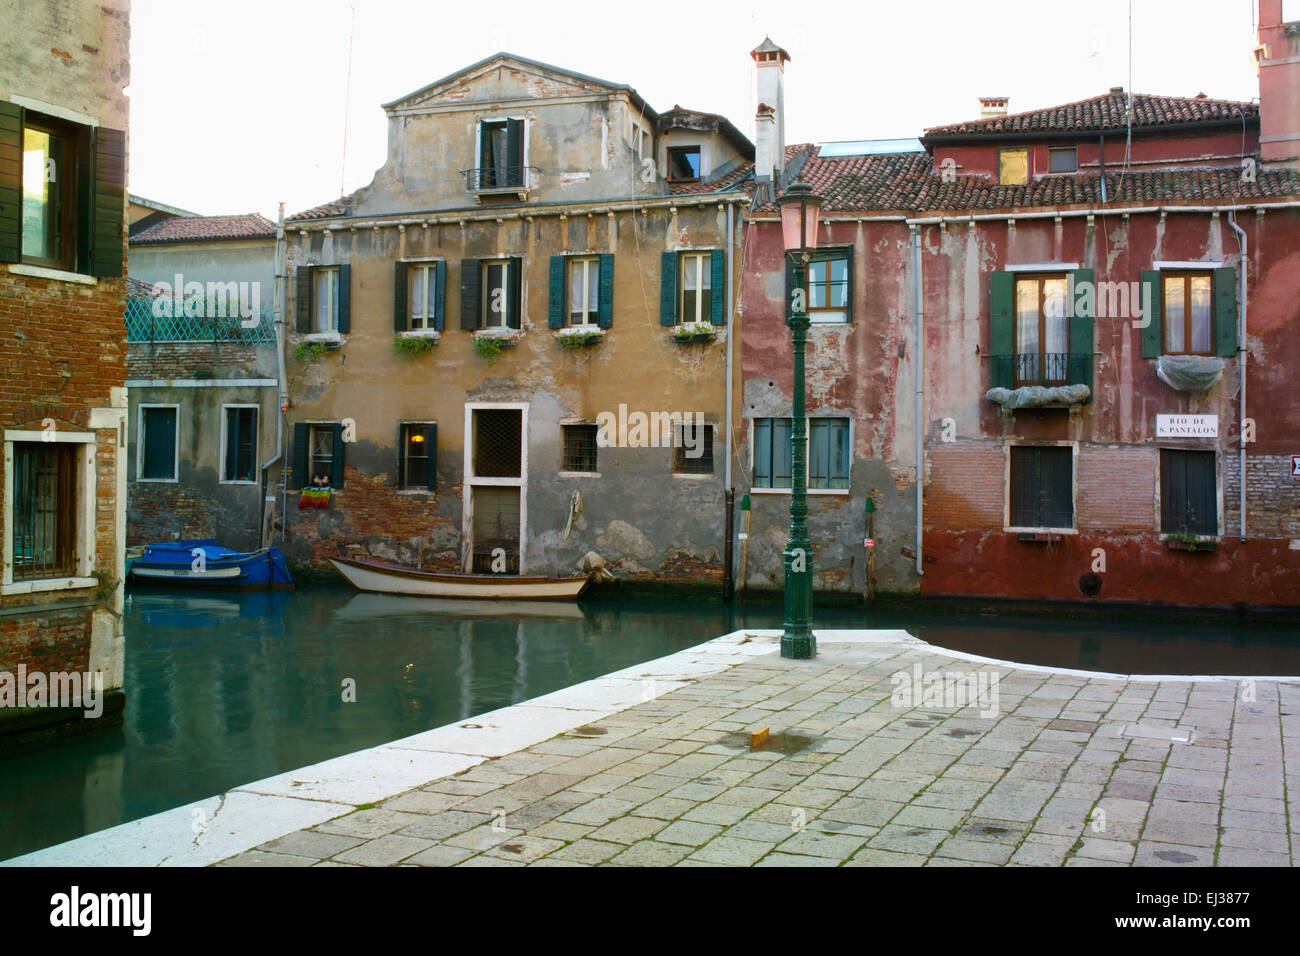 Venise, Italie. Quartier San Pantalon avec canal tranquille et petite place  Photo Stock - Alamy